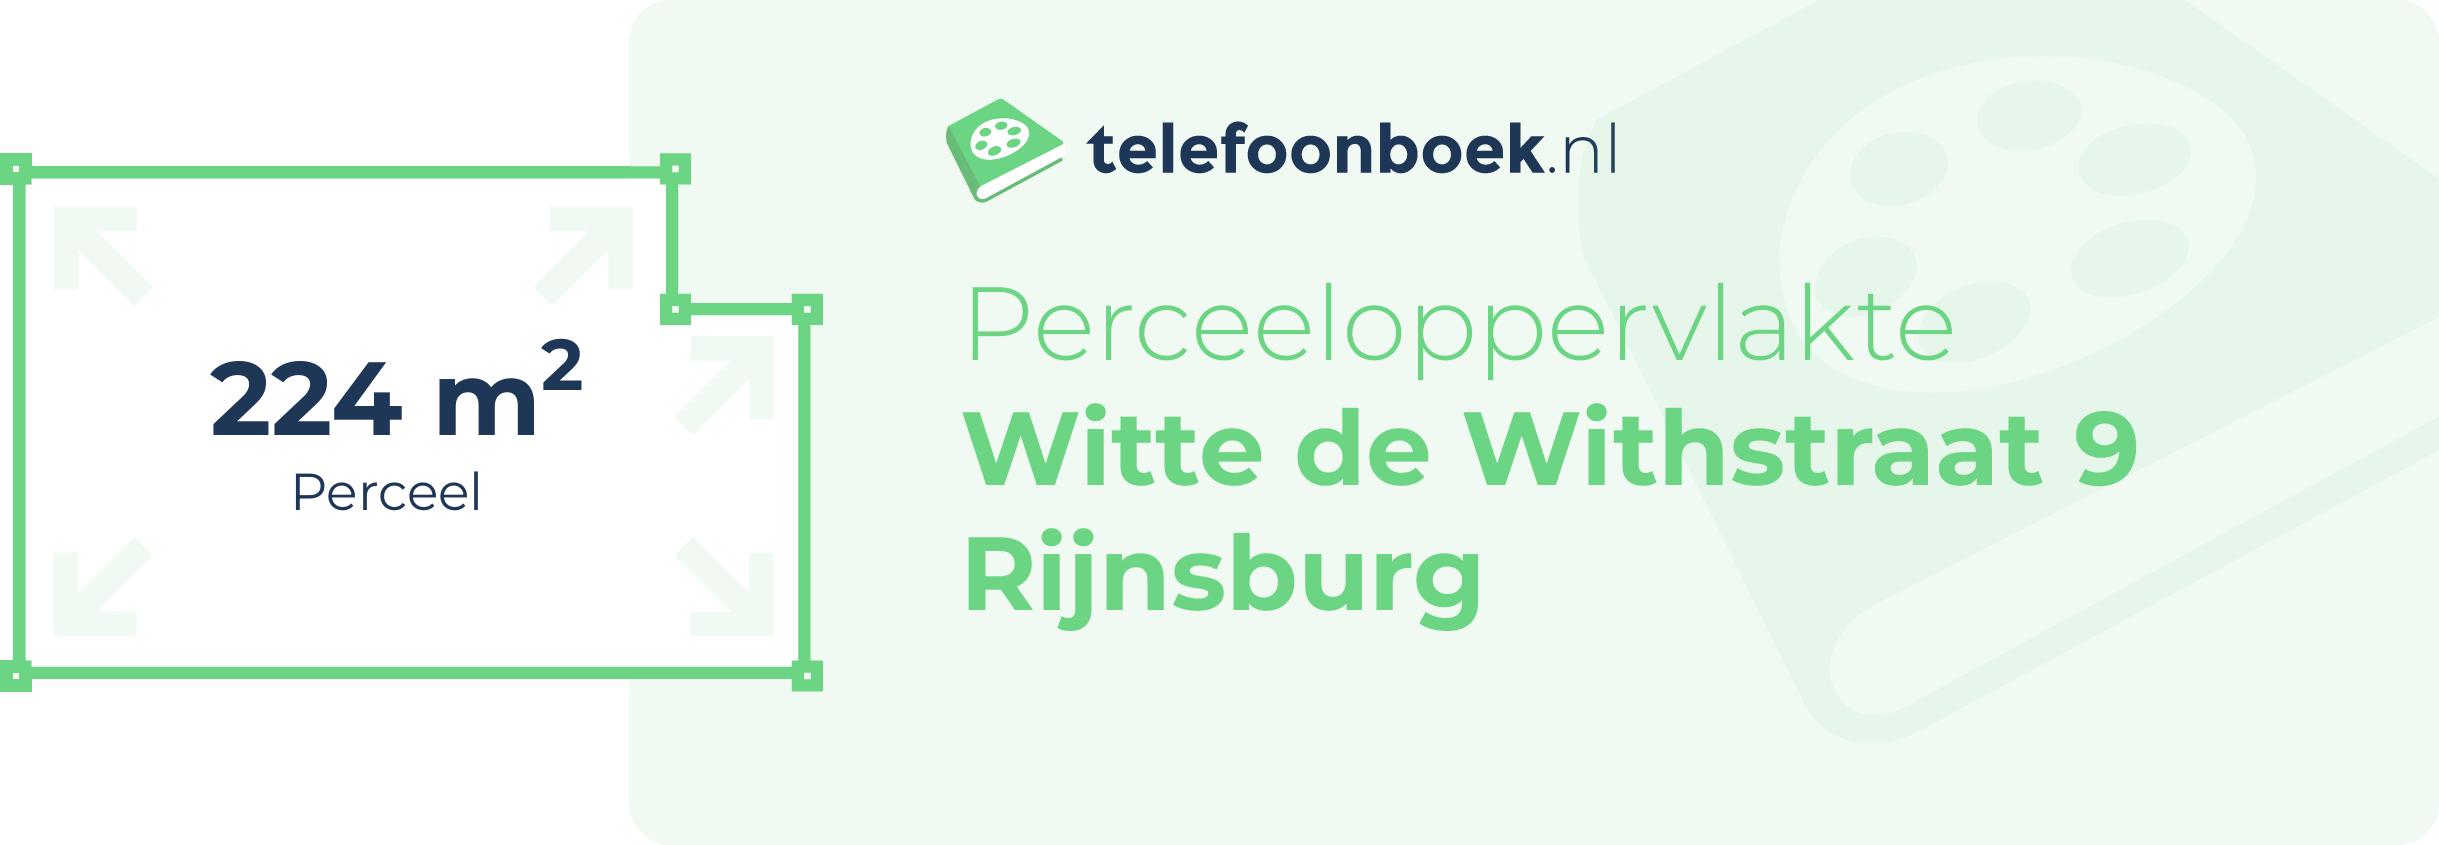 Perceeloppervlakte Witte De Withstraat 9 Rijnsburg